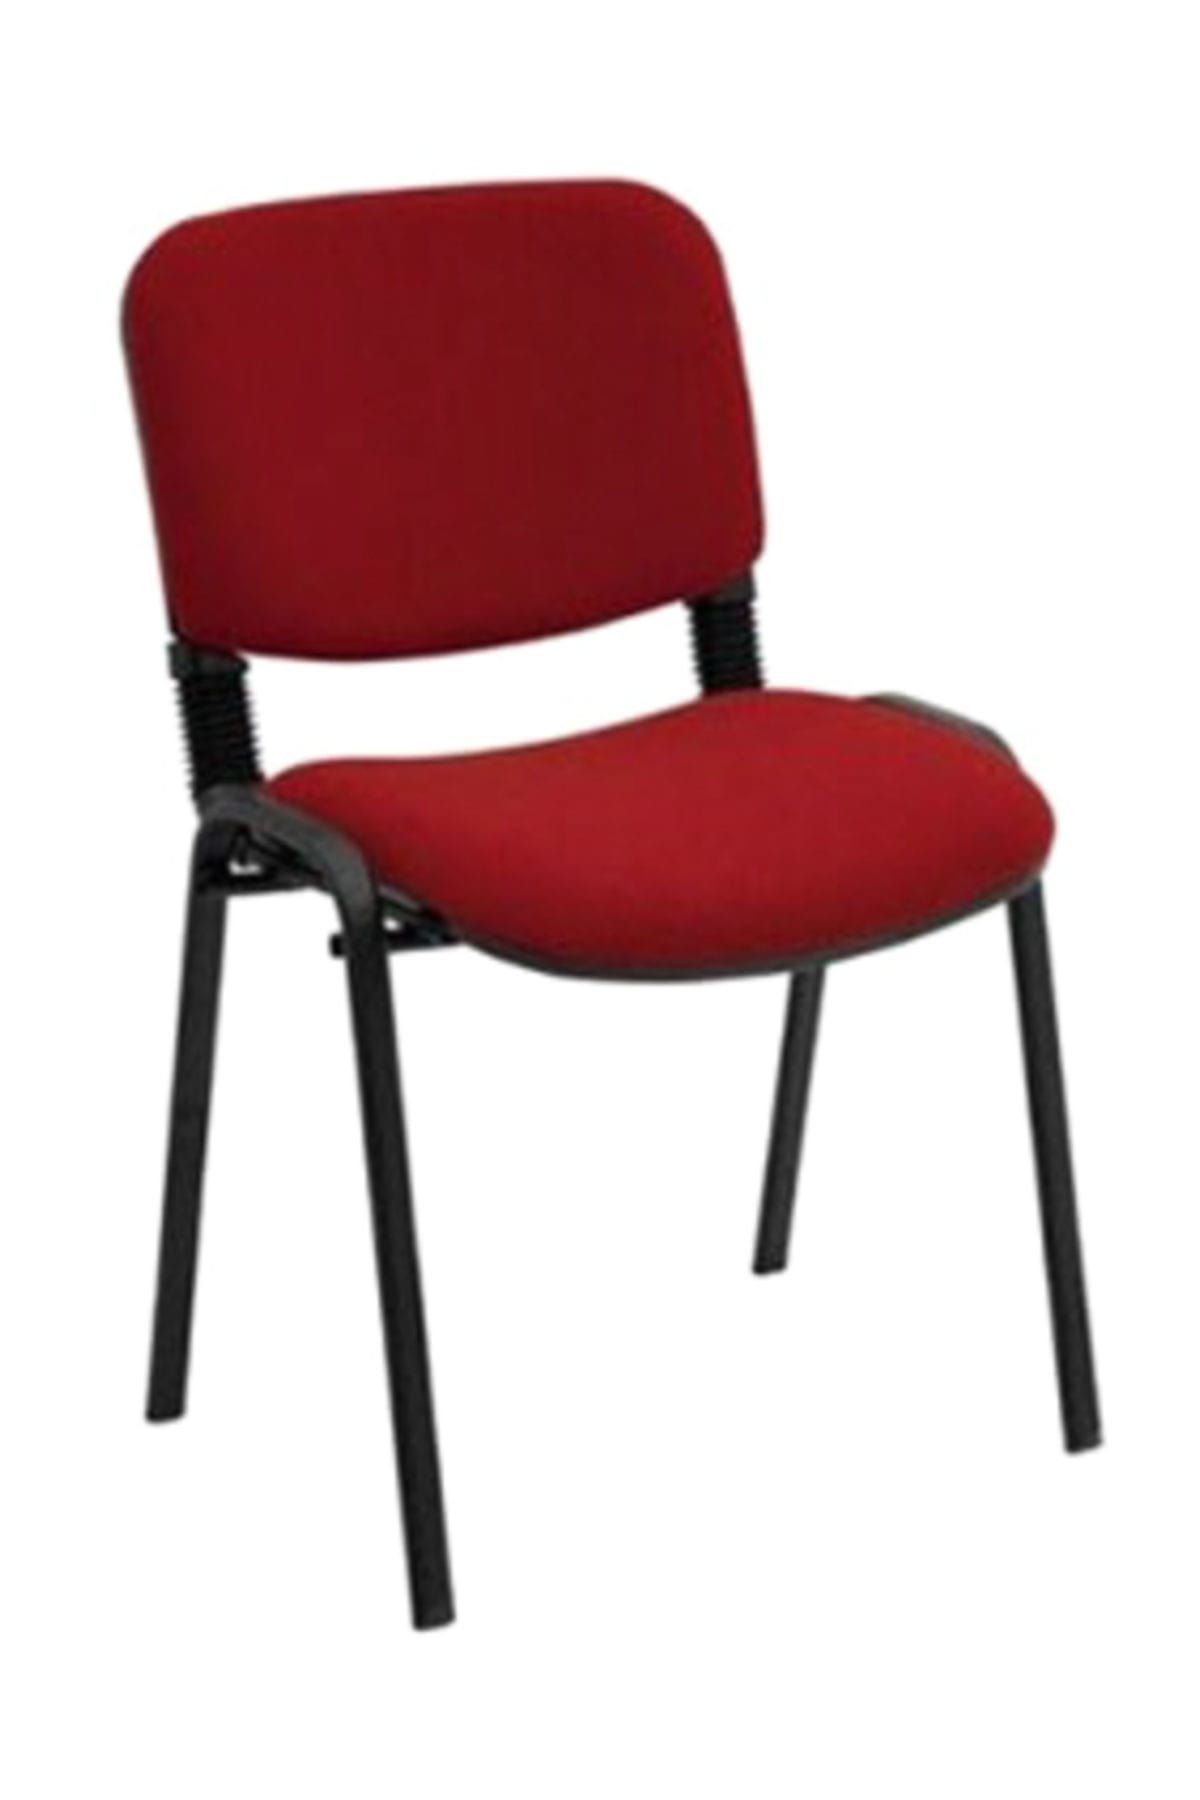 Türksit Form Sandalye 2 Adet Set Bordo - Deri